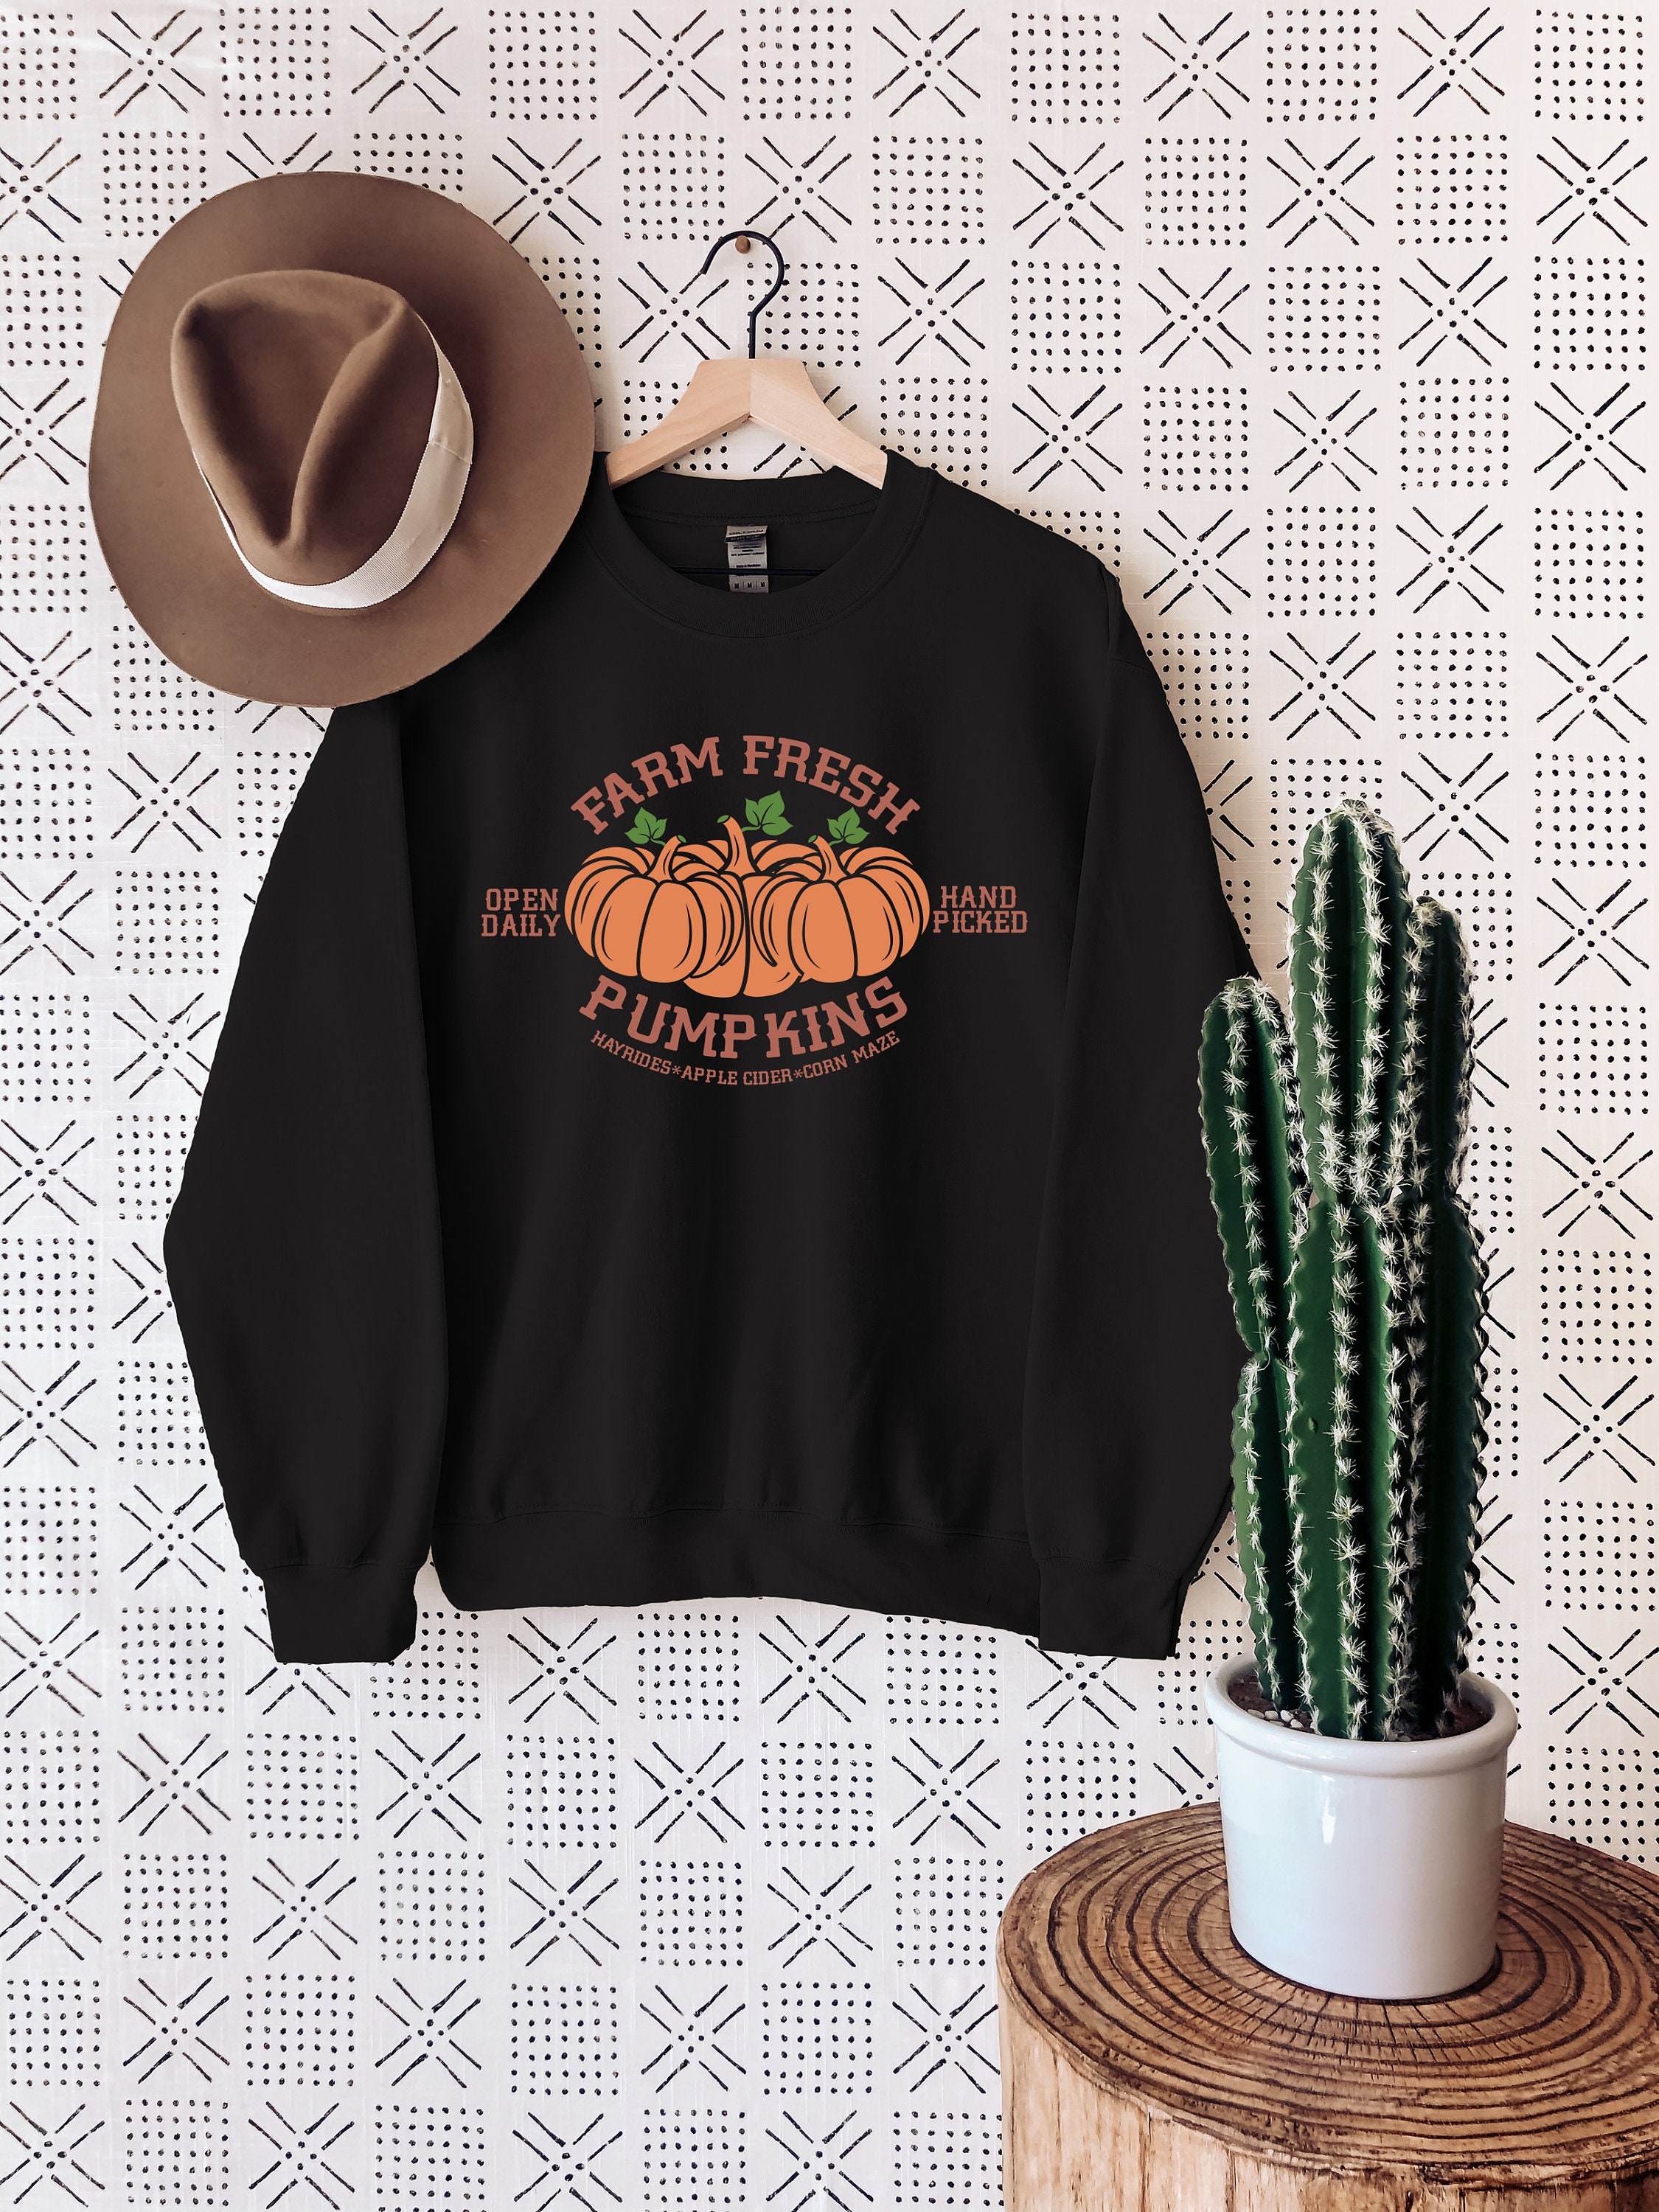 Discover Farm Fresh Pumpkin Sweatshirt, Pumpkin Patch Shirt, Women Halloween Crewneck, Cute Pumpkin T-Shirt